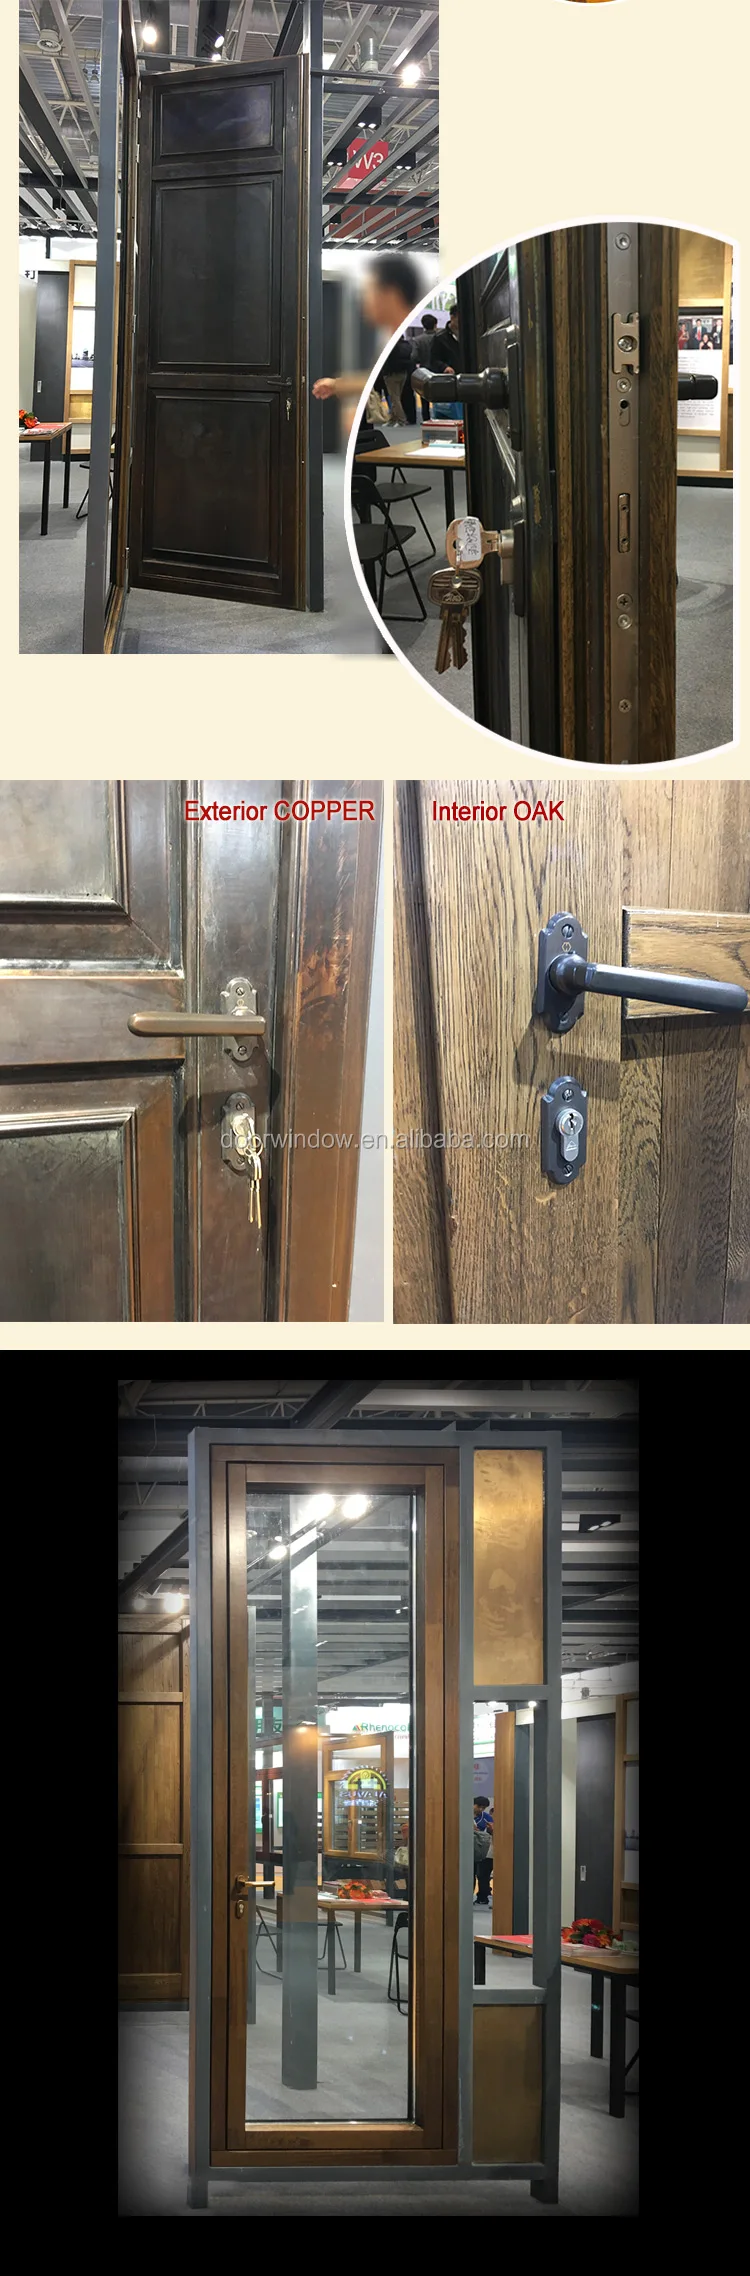 Nordic fresh style front door designs copper frame clad 3 solid oak panel wood door